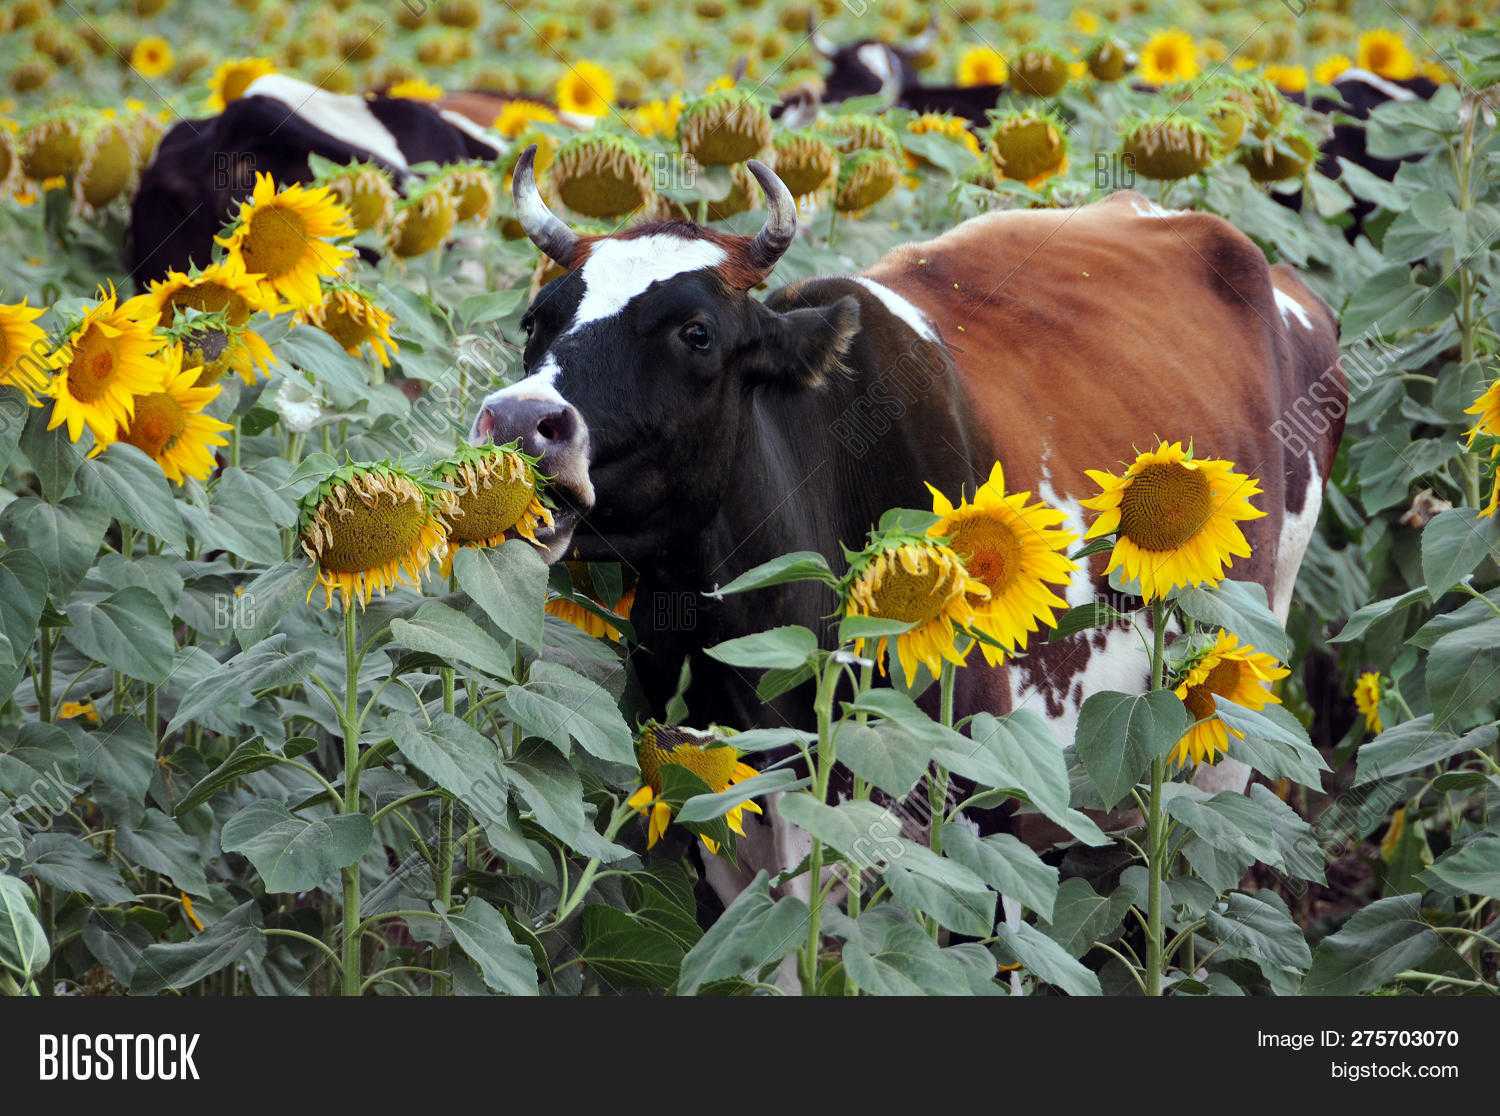 Кормление коров | подсолнечный шрот: исследование переваримости и кормовой ценности